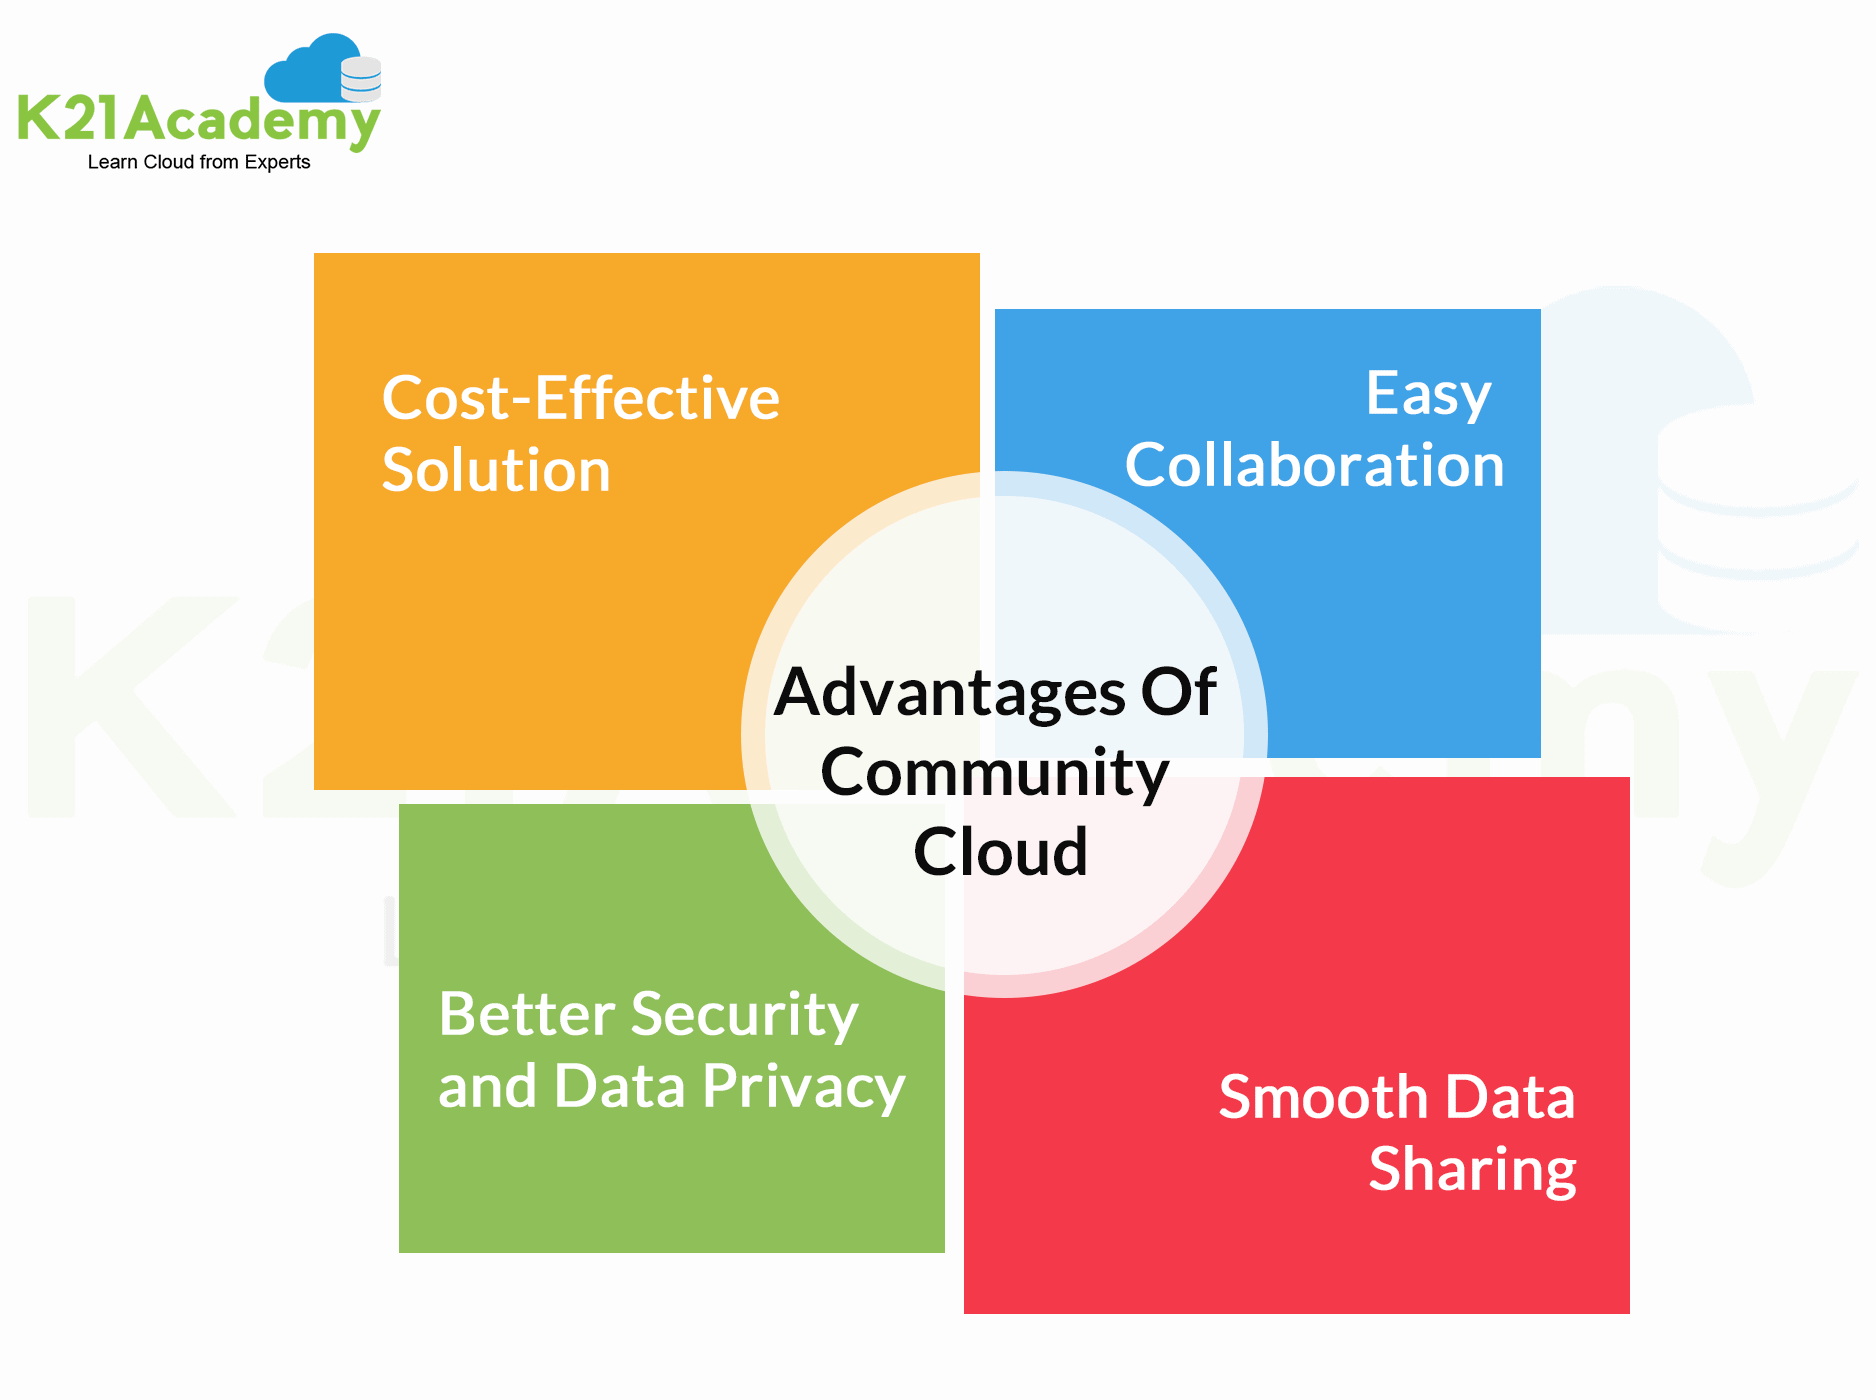 Advantages of community cloud